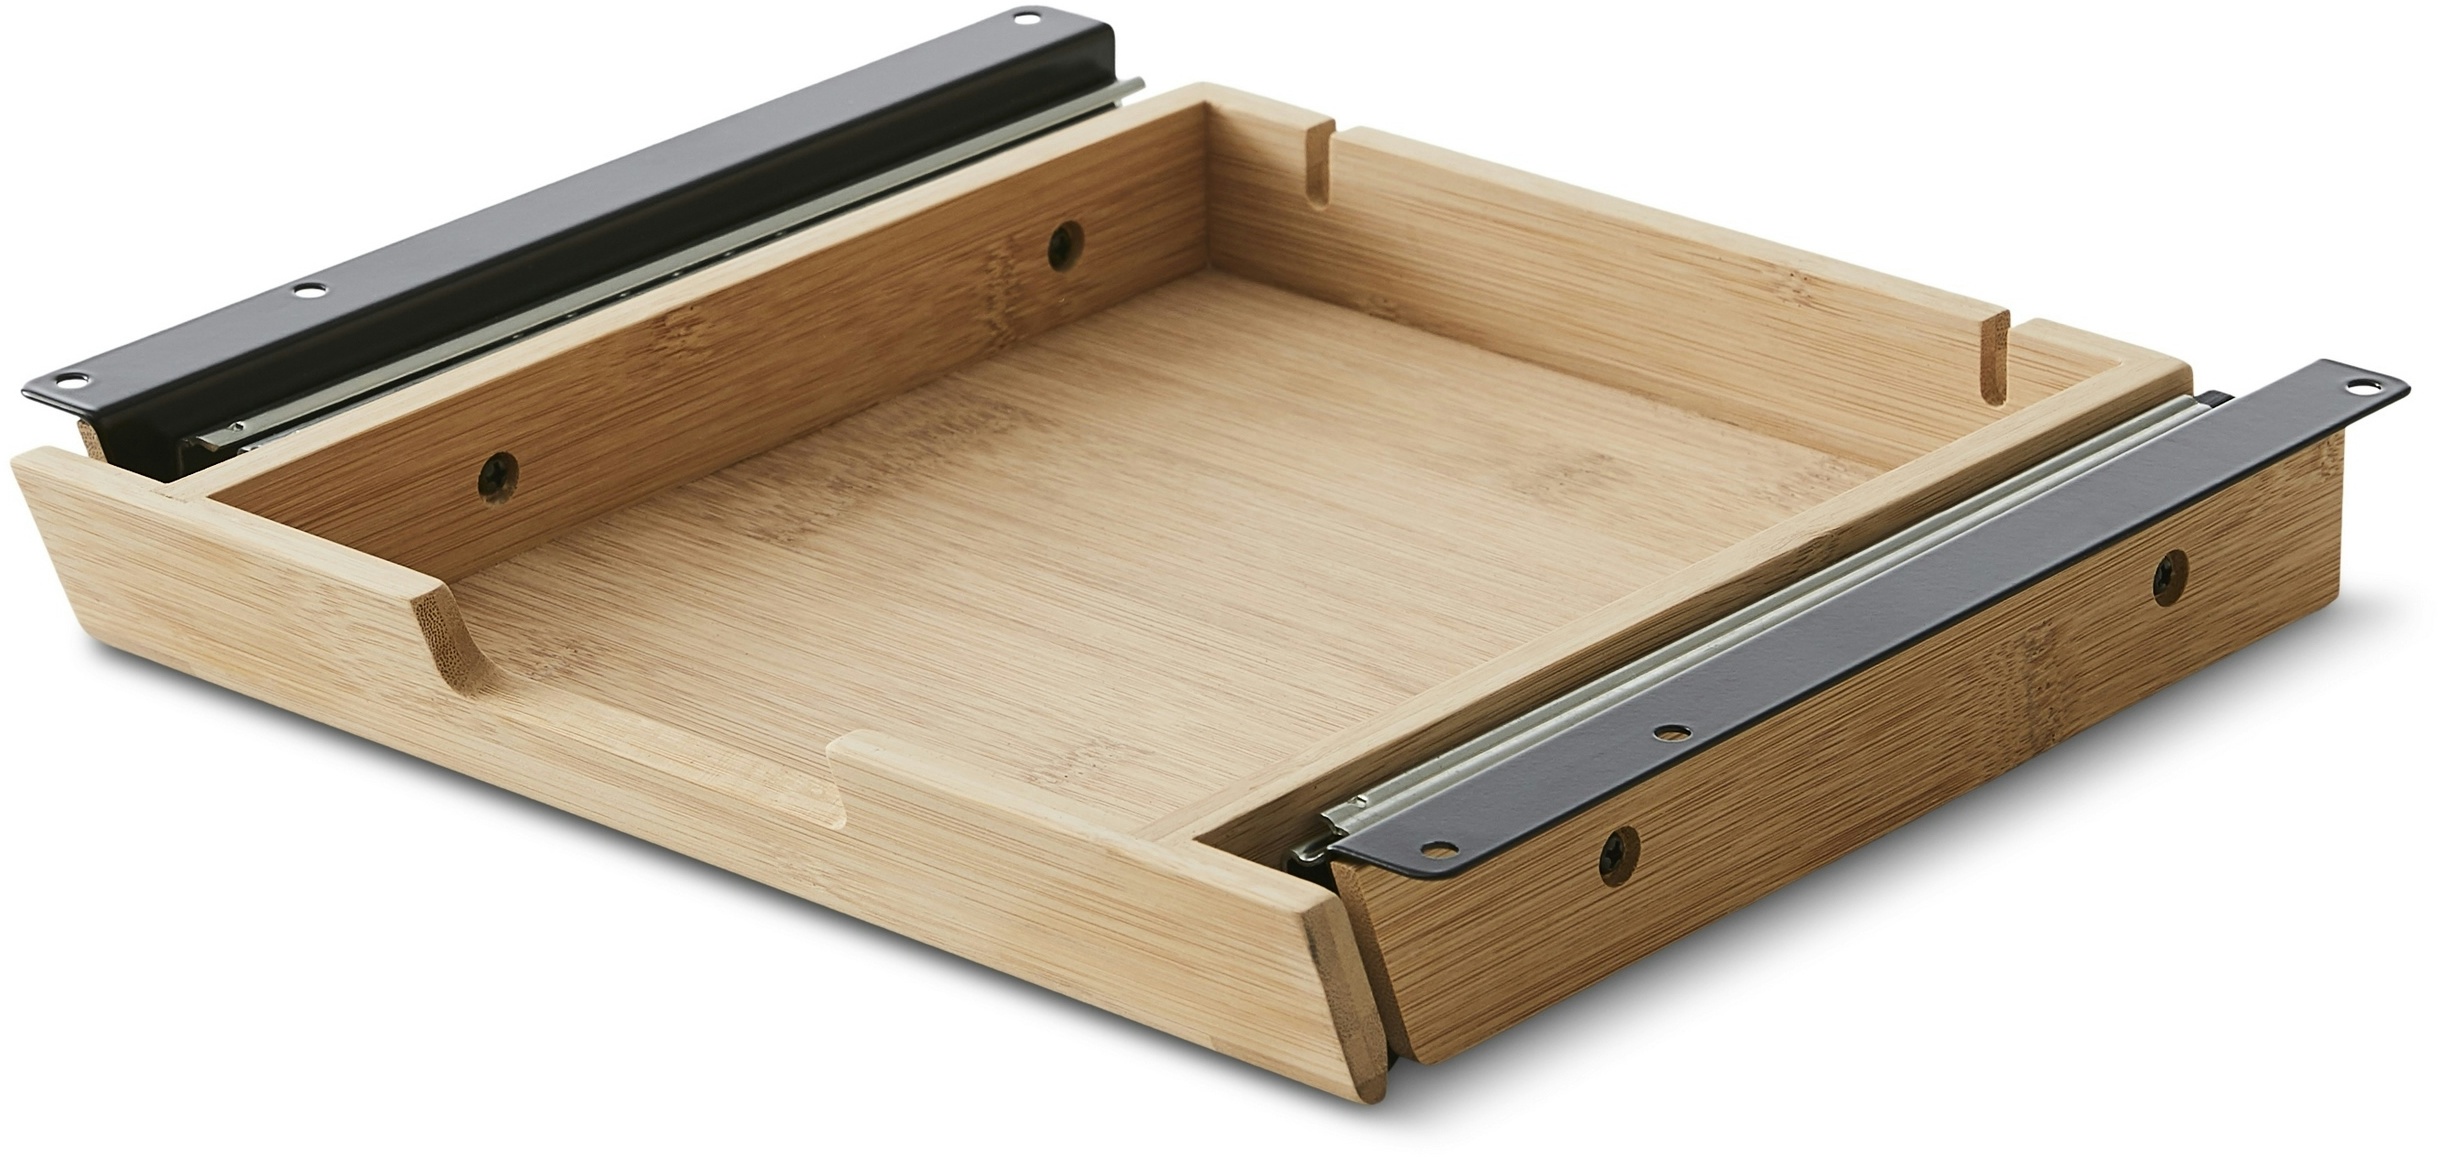 bümö Schreibtisch Organizer Schublade aus Bambus - extra kleine Unterbau Ablage für Stifte, Smartphones & Co. - einfach unter dem Tisch montierbar,